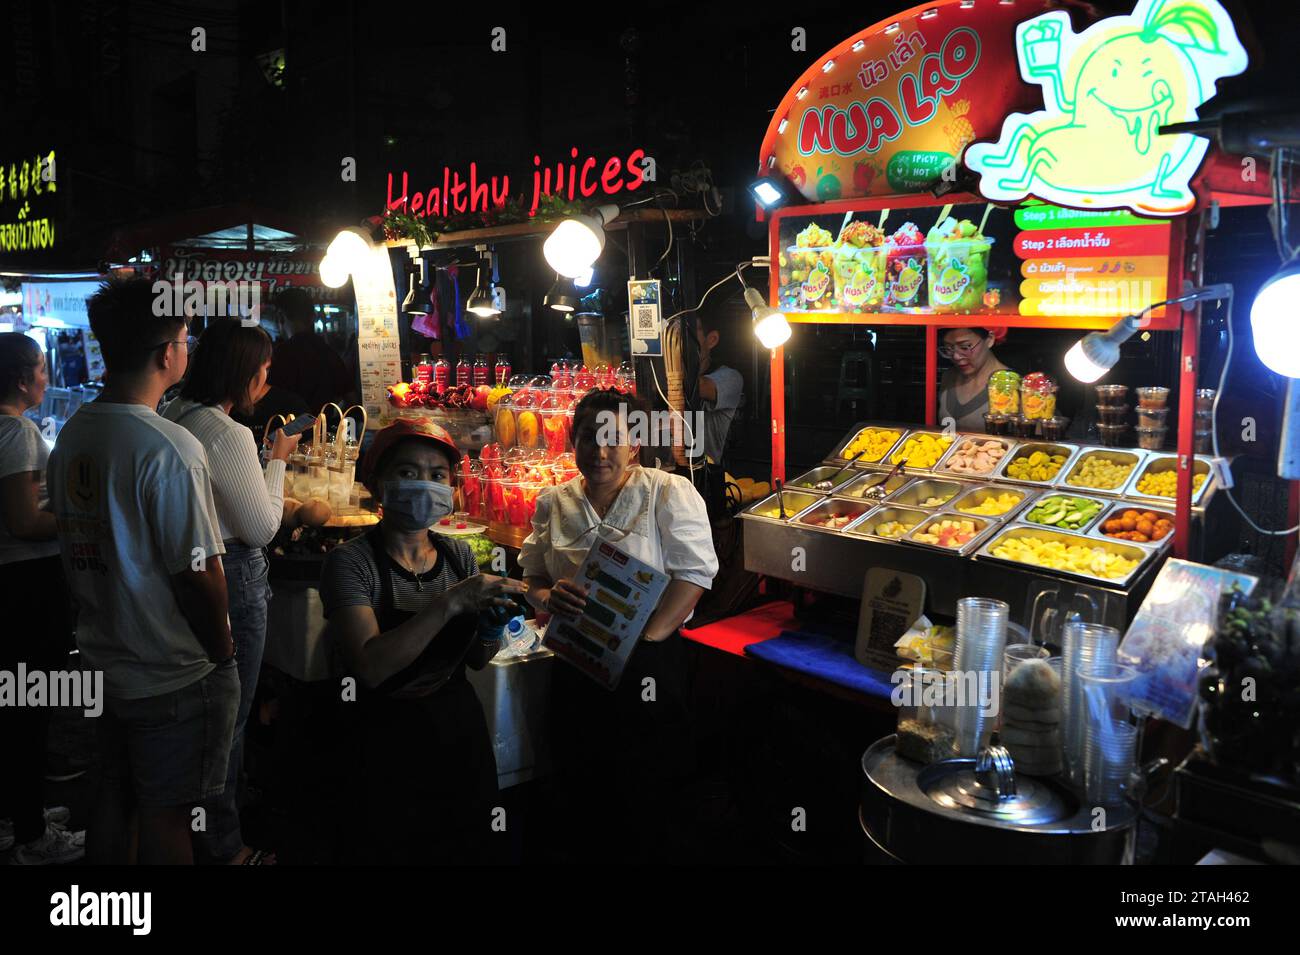 Chinatown in Bangkok ist eines der größten Chinatowns der Welt und ist bekannt für seine unglaublichen Einkaufsmöglichkeiten und verführerische Küche. Vor mehr als 200 Jahren gegründet, ist dies der wichtigste Drehkreuz für Bangkoks große chinesische Gemeinde. Fahren Sie die Yaowarat Road hinunter, voller Aktivitäten und voller Geschäfte, die eine Auswahl an Souvenirs, Schmuck und Schmuckstücken anbieten. Danach machen Sie Halt in einem familiengeführten Restaurant, um sich ein Omelett oder Dim Sum zu schnappen. Bangkok, Thailand. Stockfoto